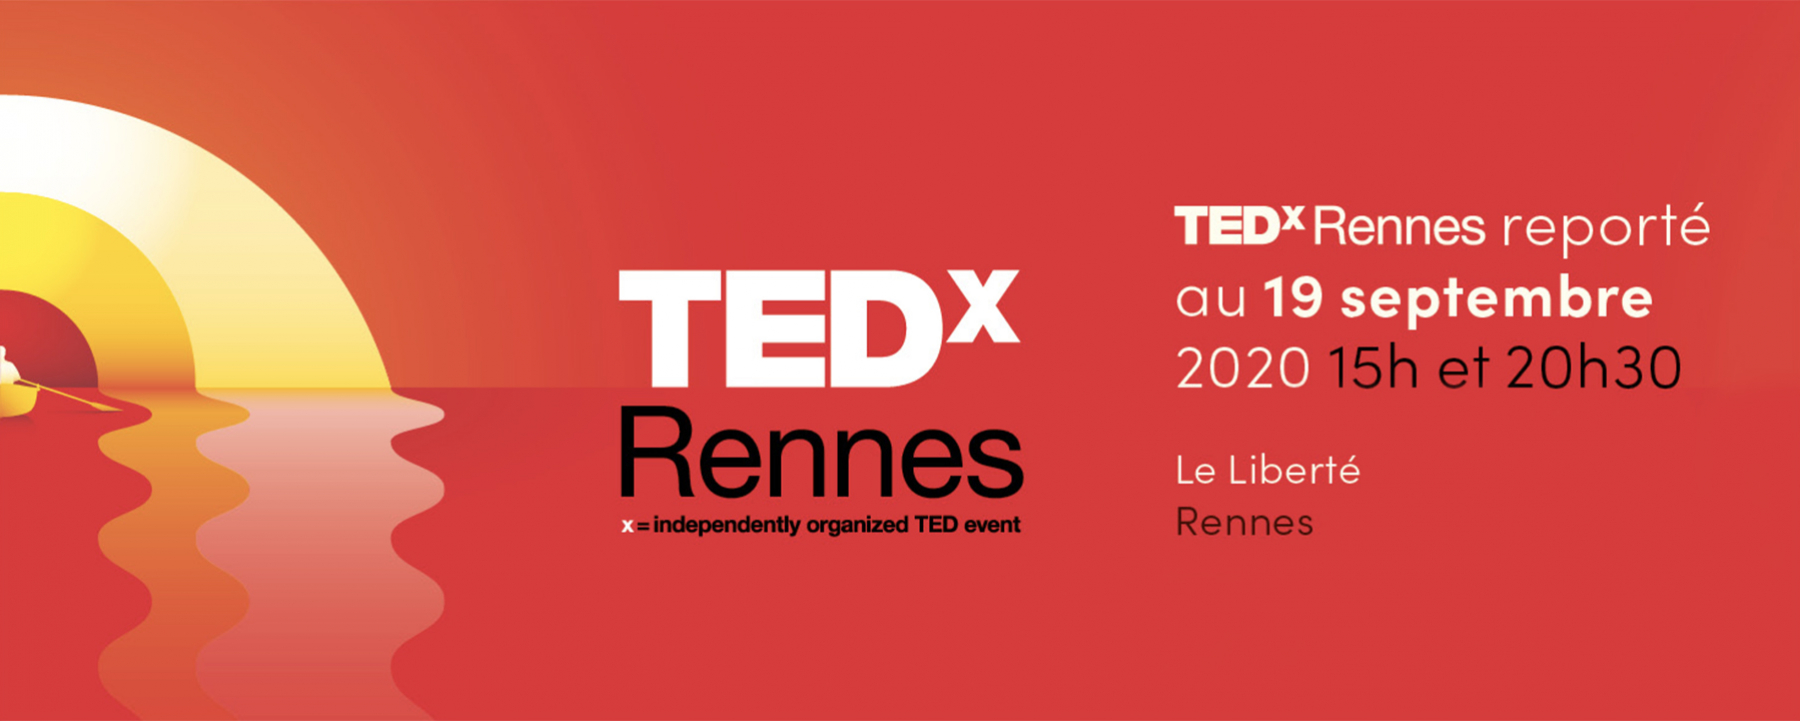 Conférence TEDX Rennes 2020, un événement organisé par Bretagne ID Large